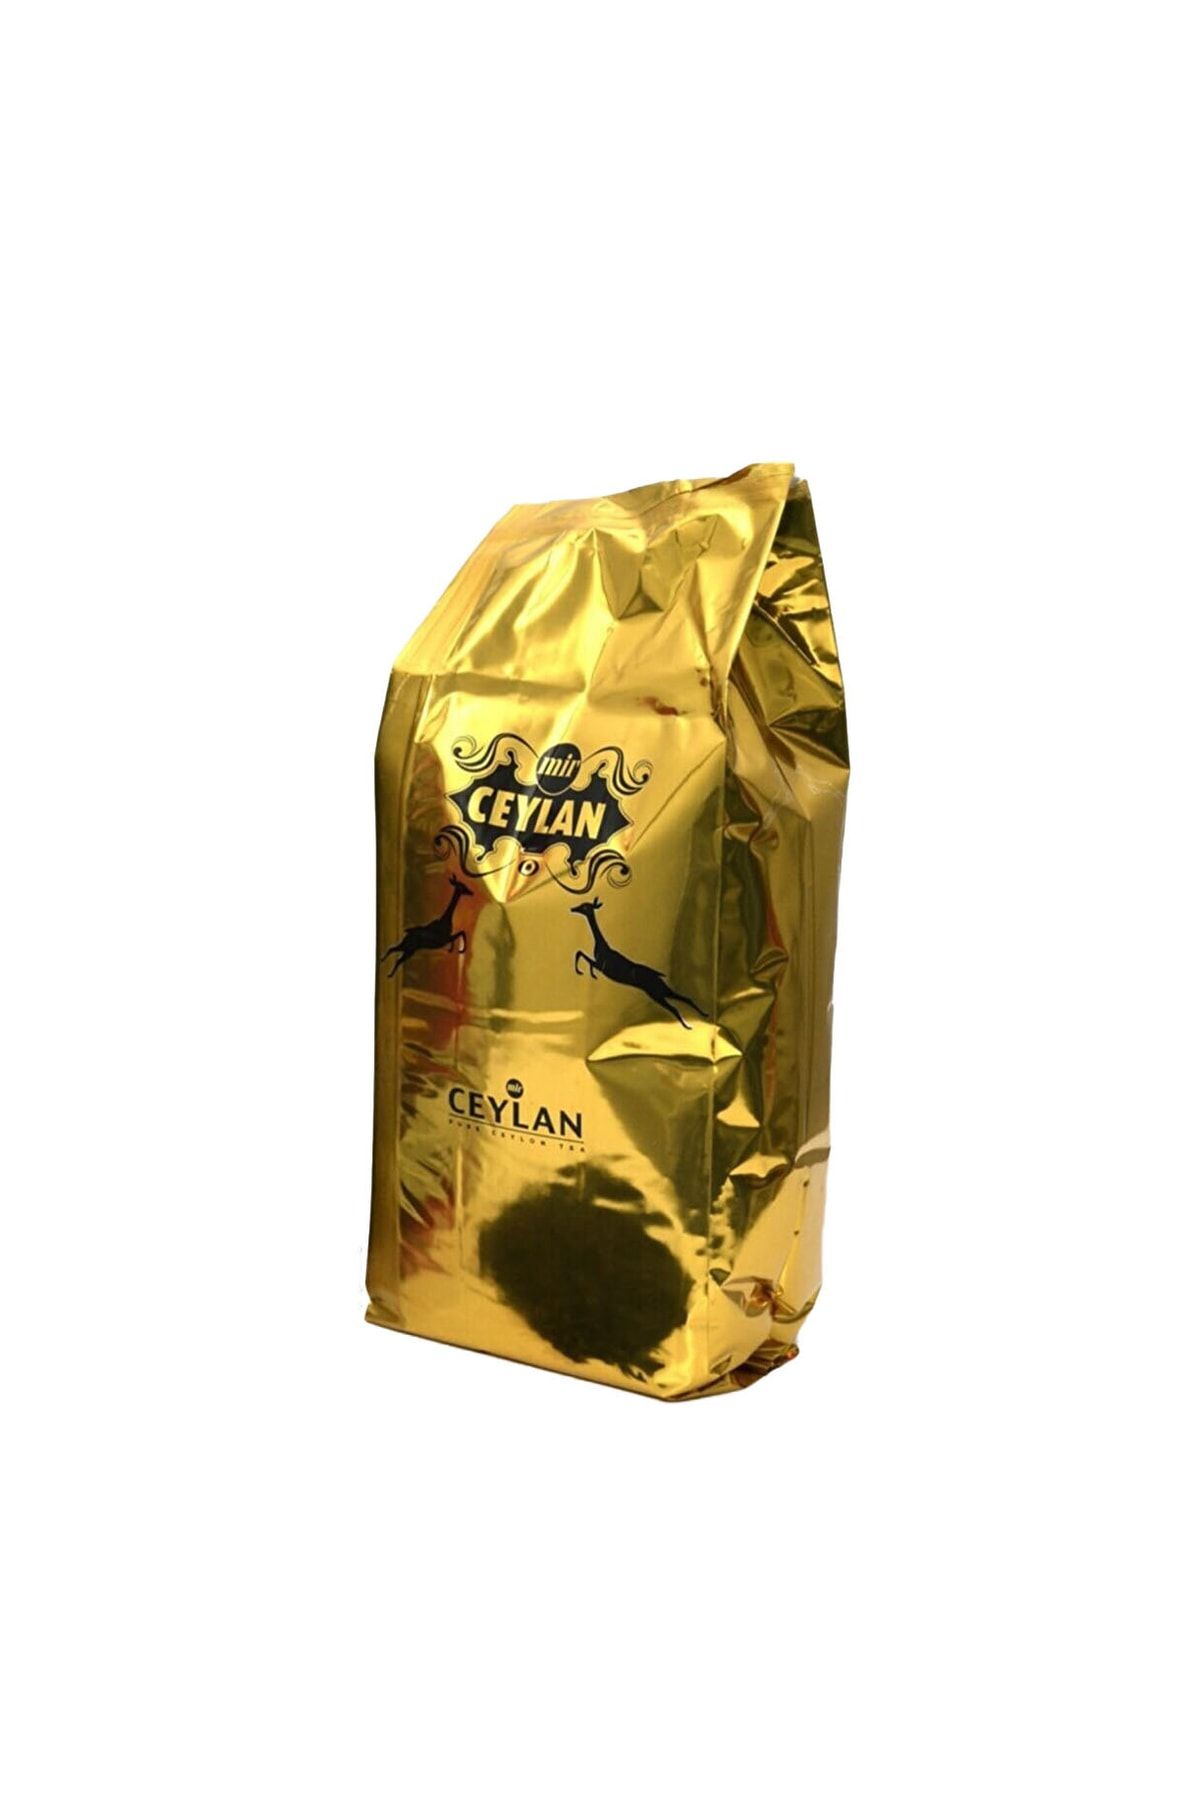 MİR CEYLAN ÇAY 800 gr Barut Çay Sert Içim Özel Üretim Ithal Seylan Sri Lanka Ceylon Siyah Yaprak Kaçak Çayı